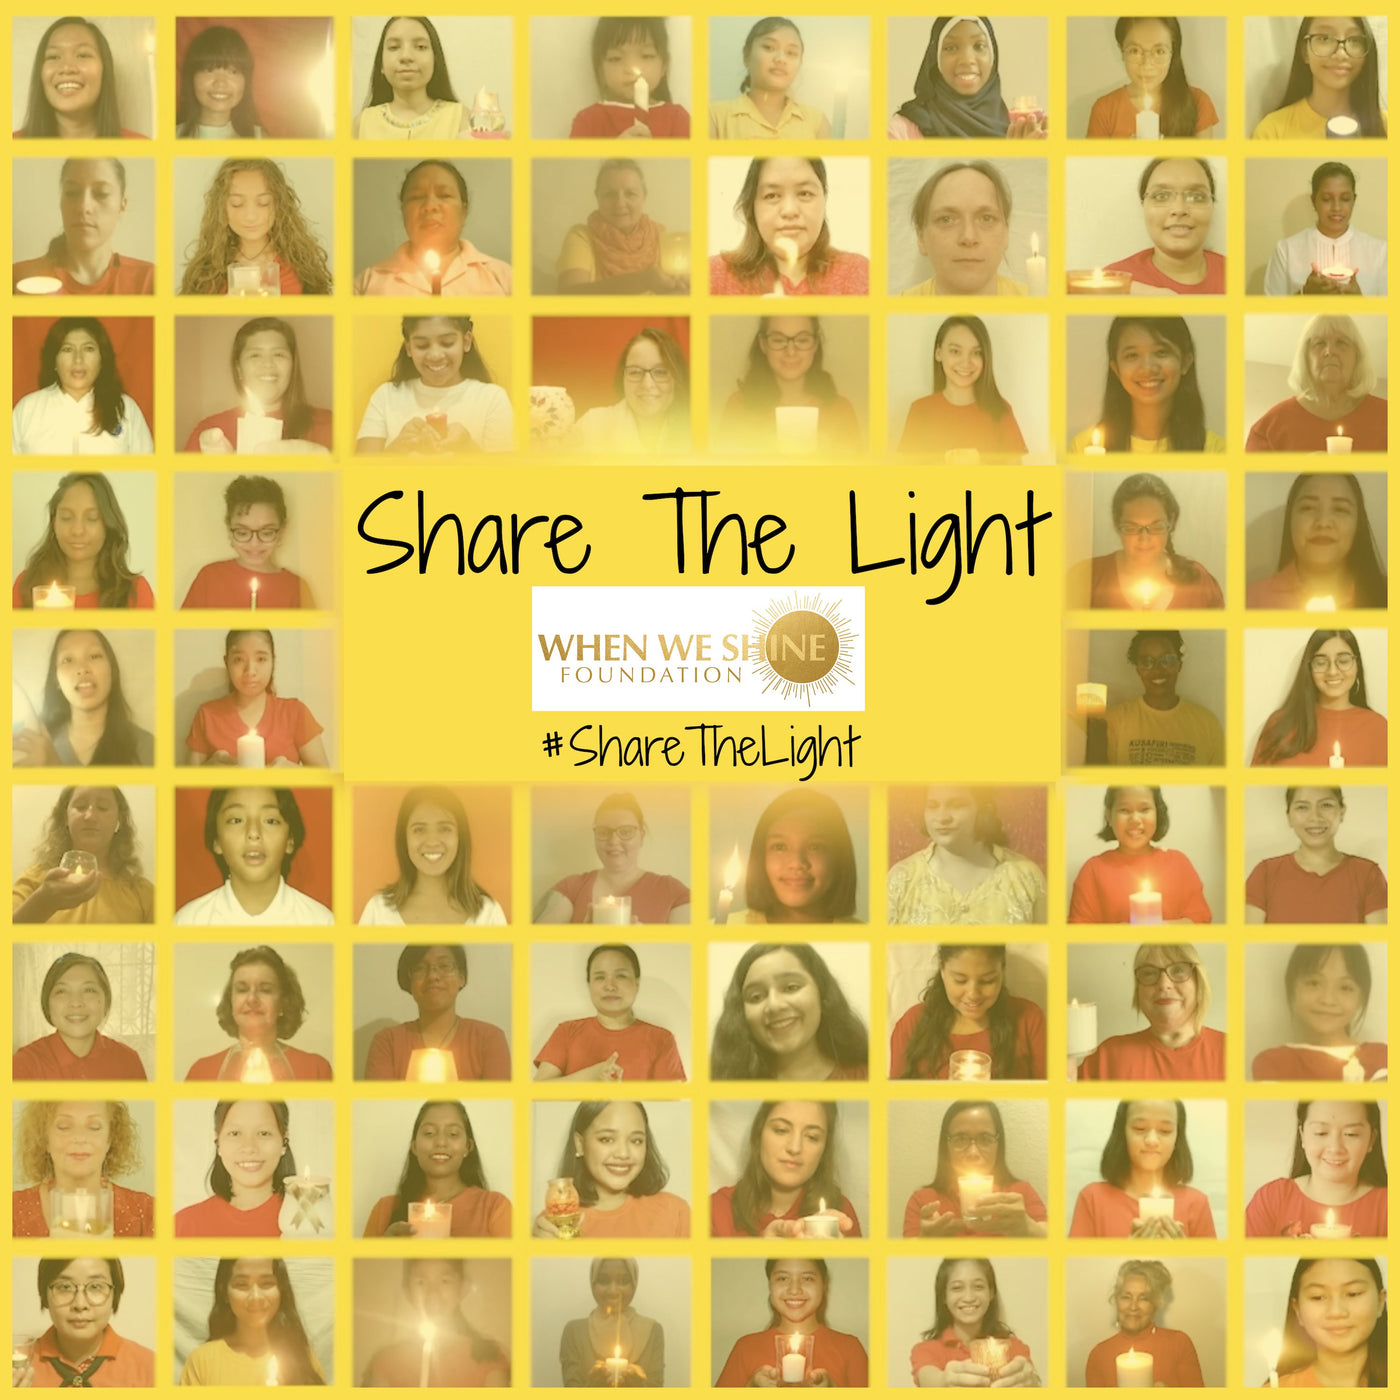 Share The Light - Lyrics